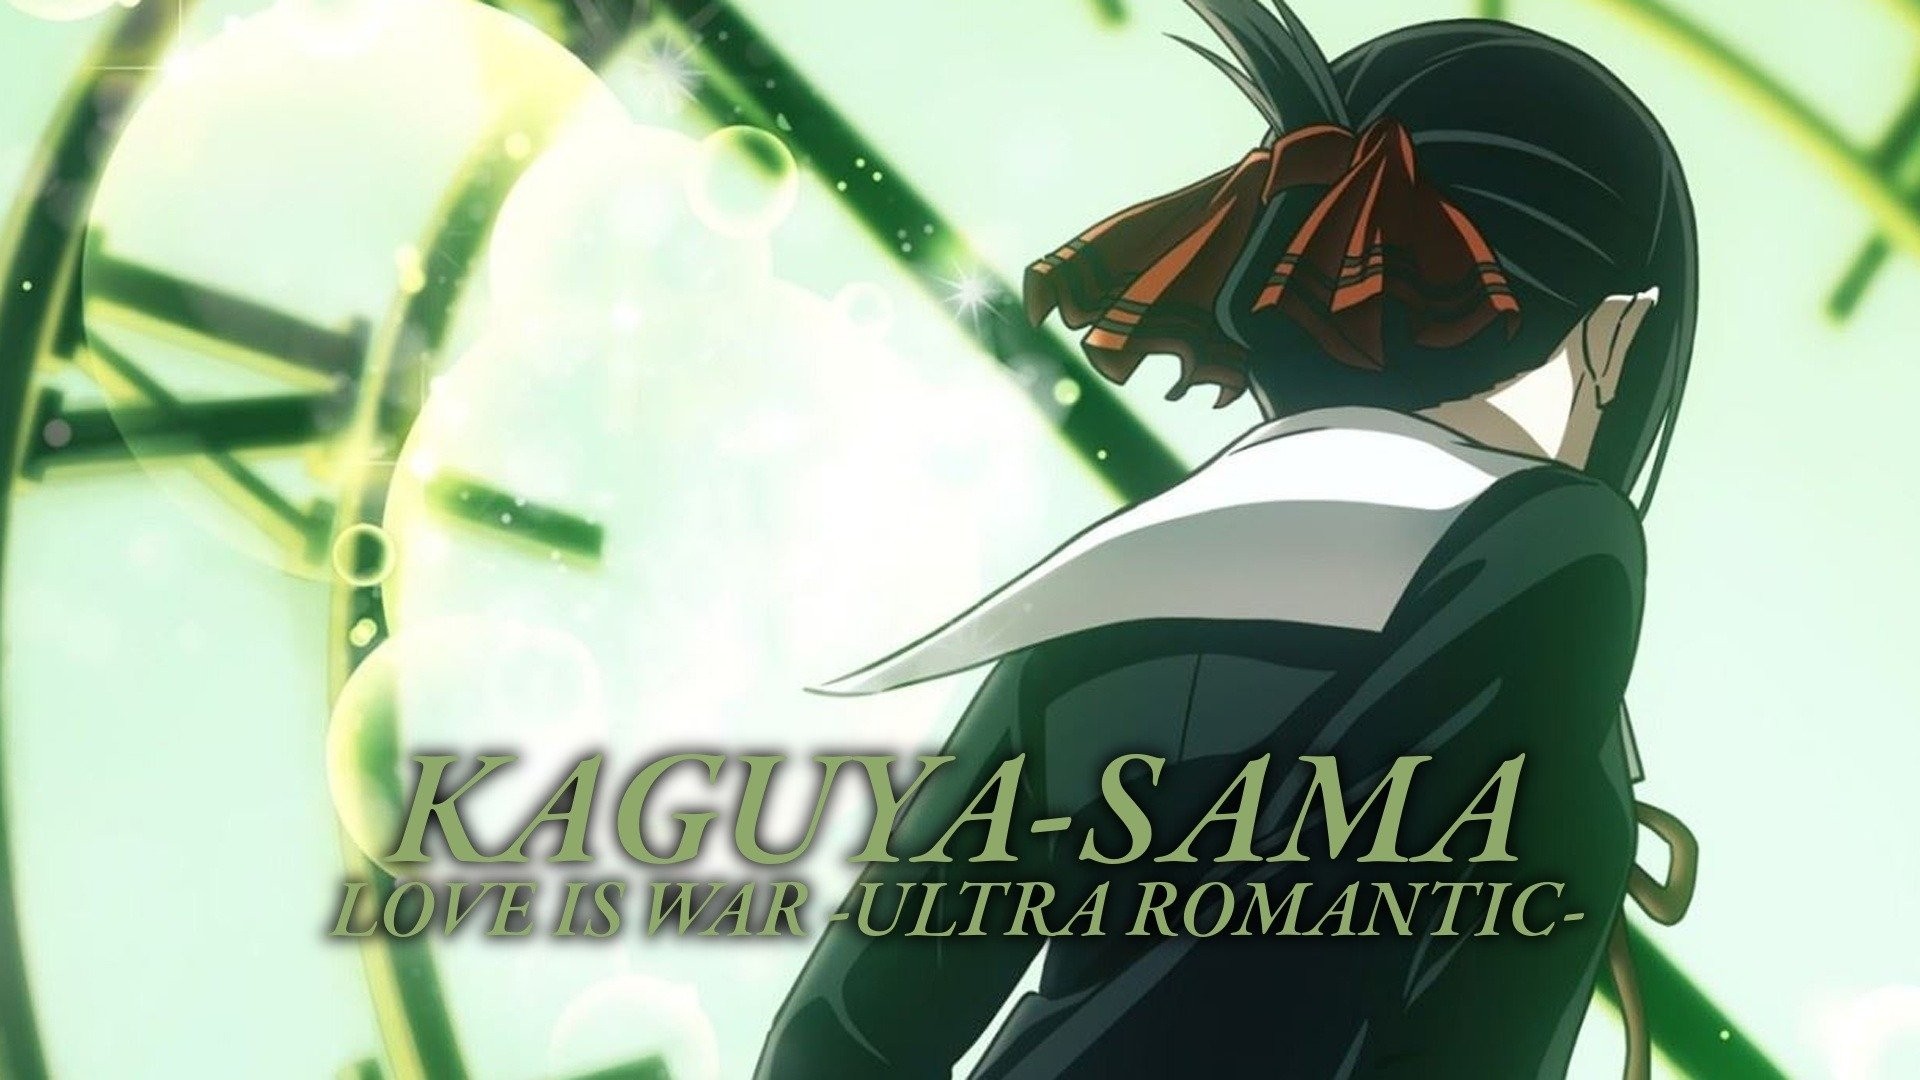 Kaguya-sama: Love Is War ~ Ultra Romantic Episode 10